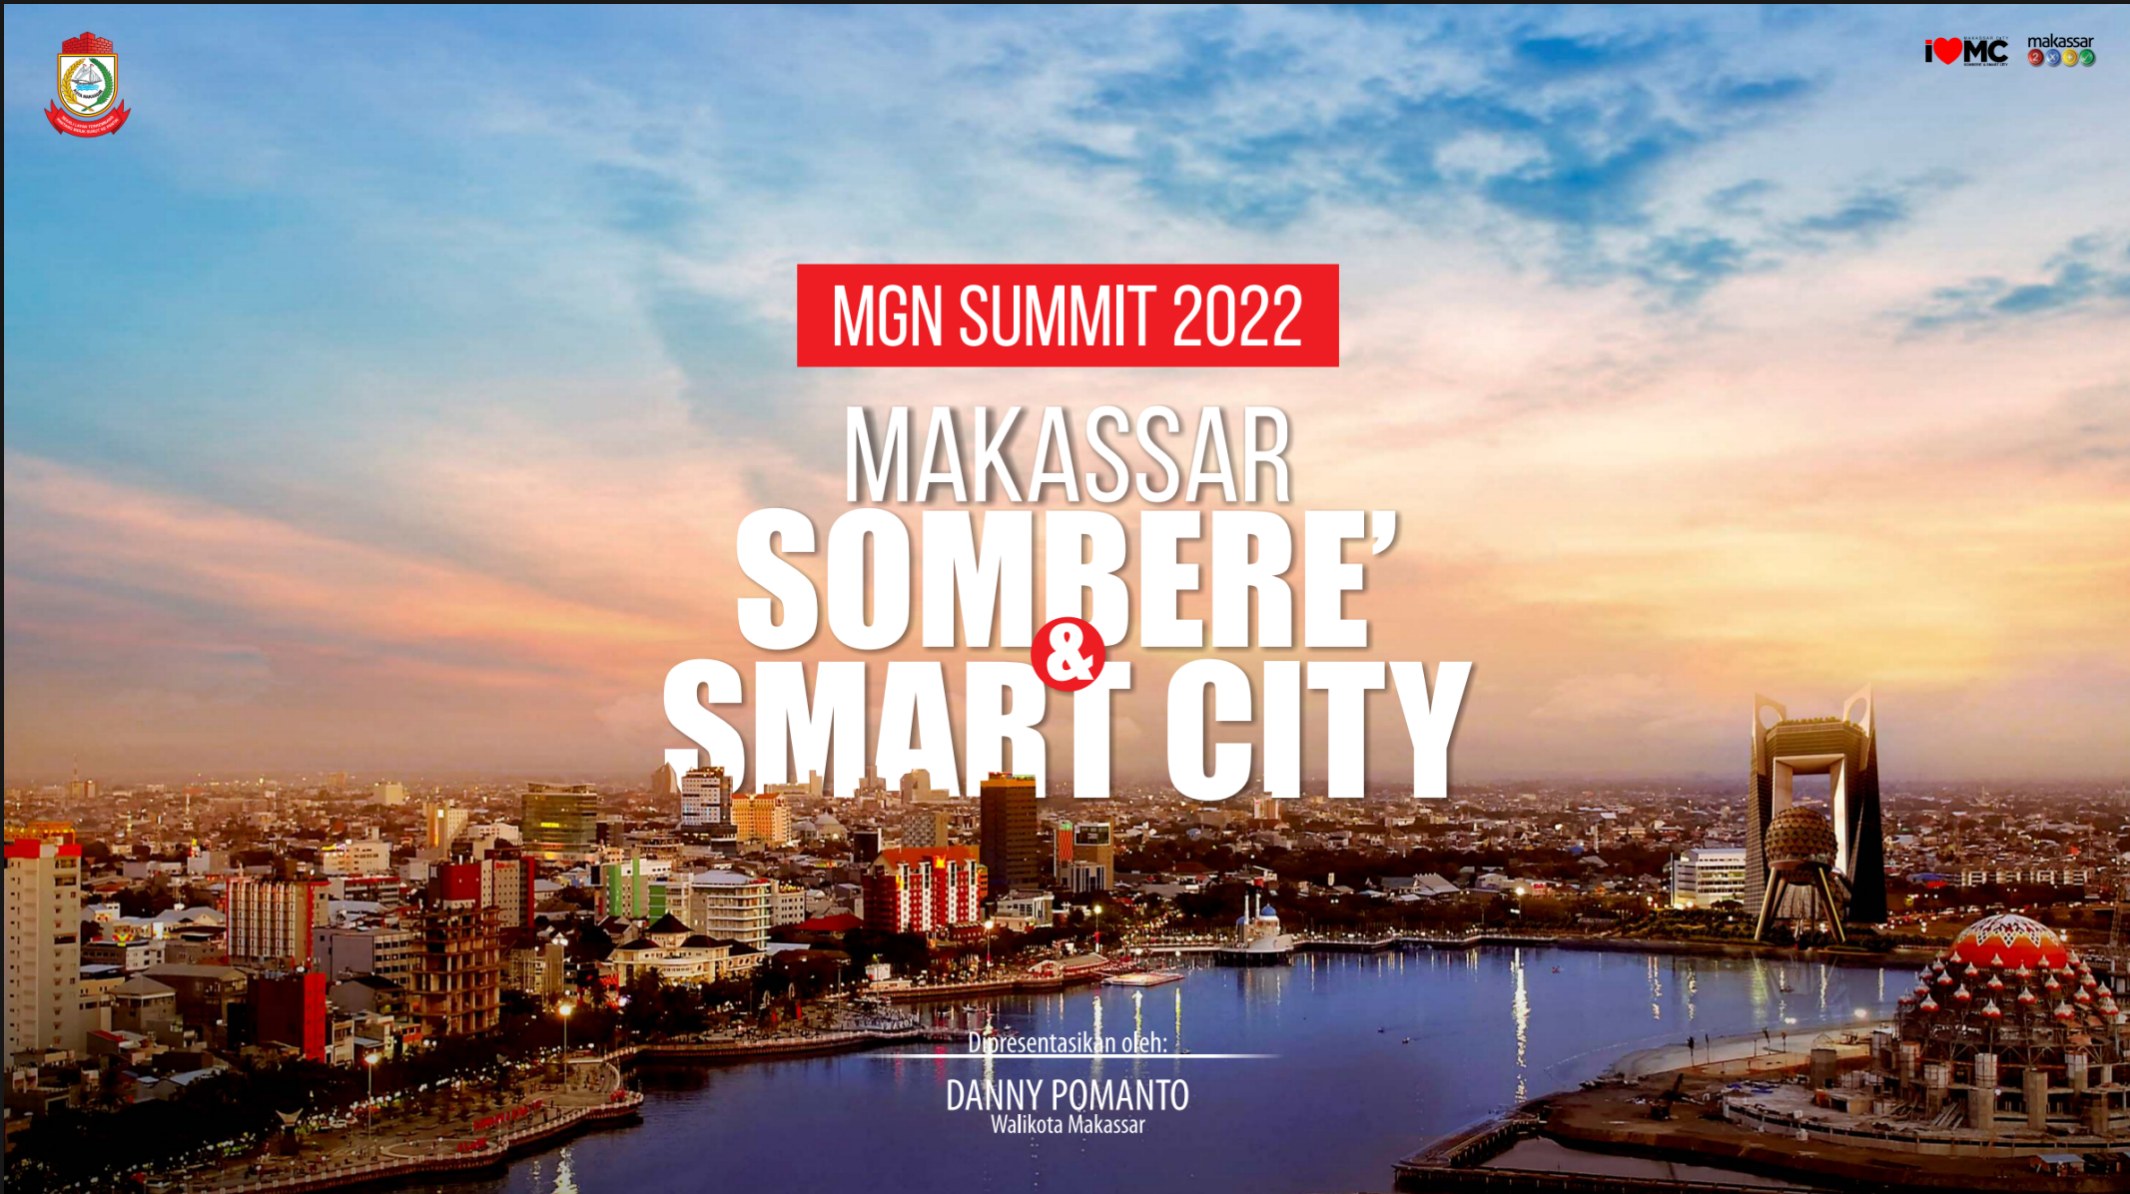 SMART CITY MAKASSAR